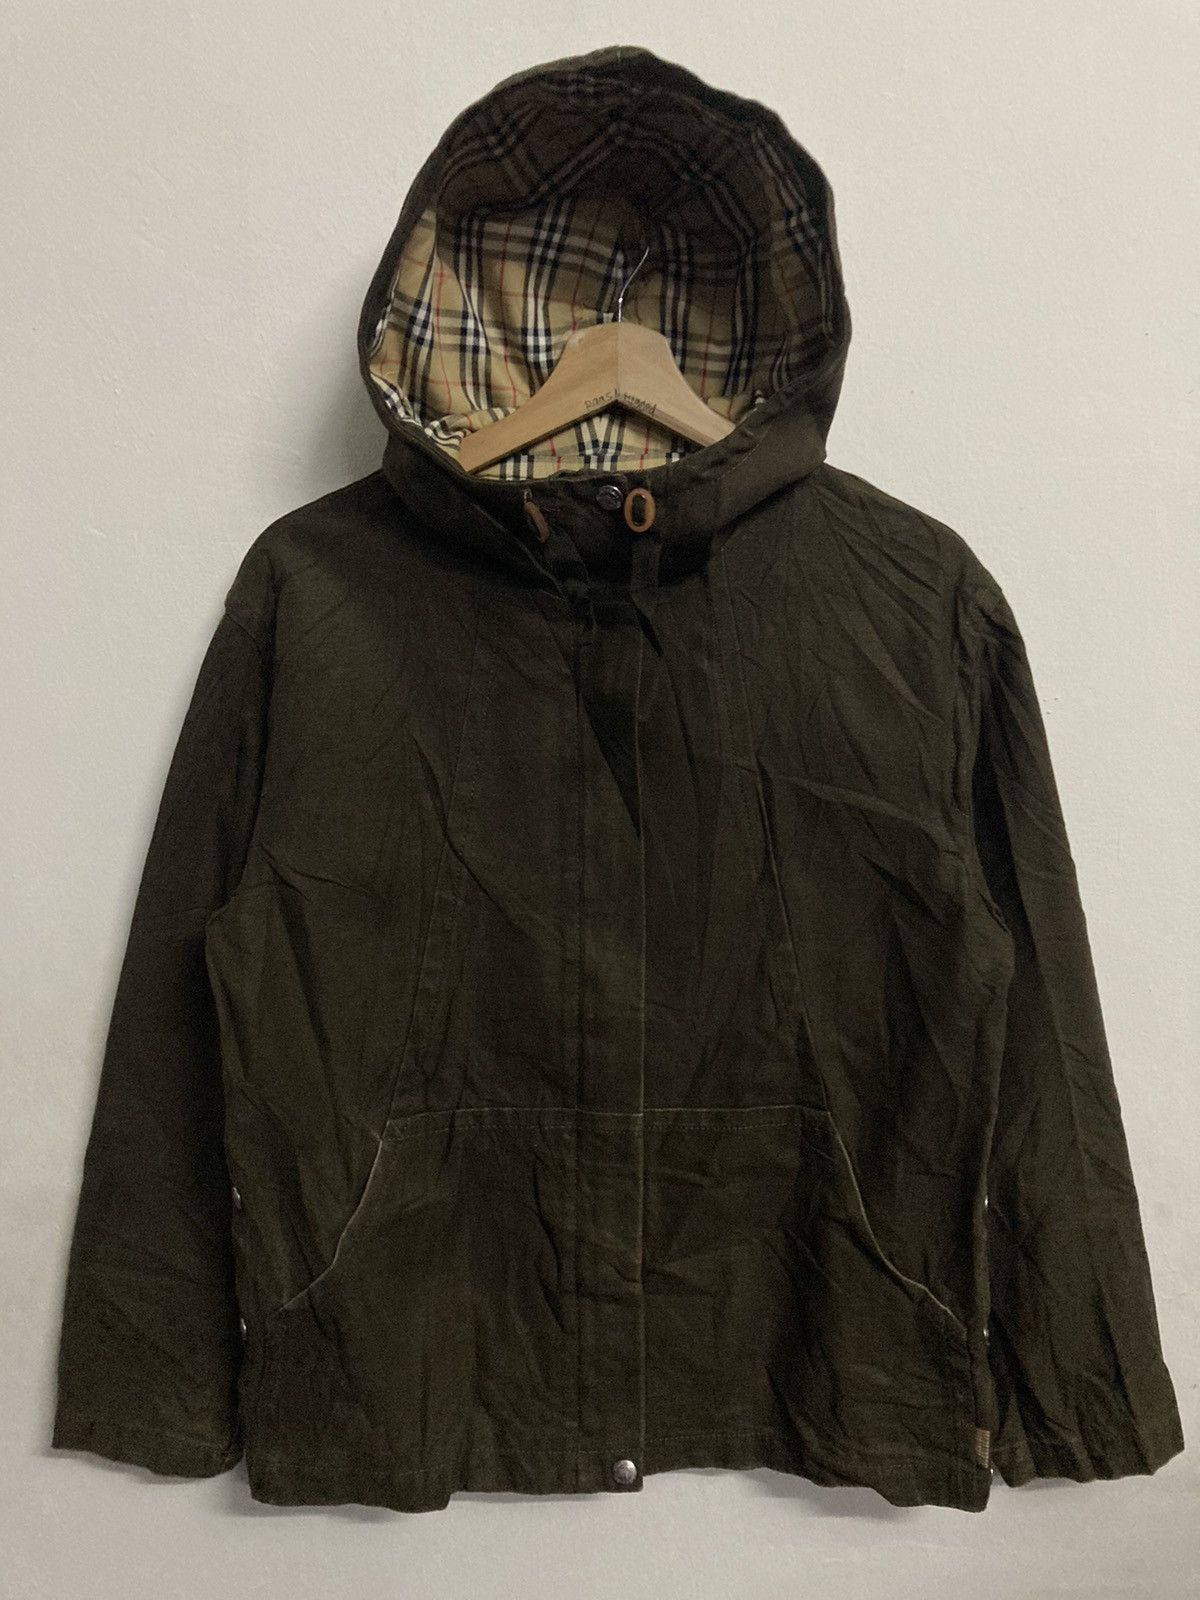 Burberrys Blue Label Hooded Jacket in Size 38 - 1